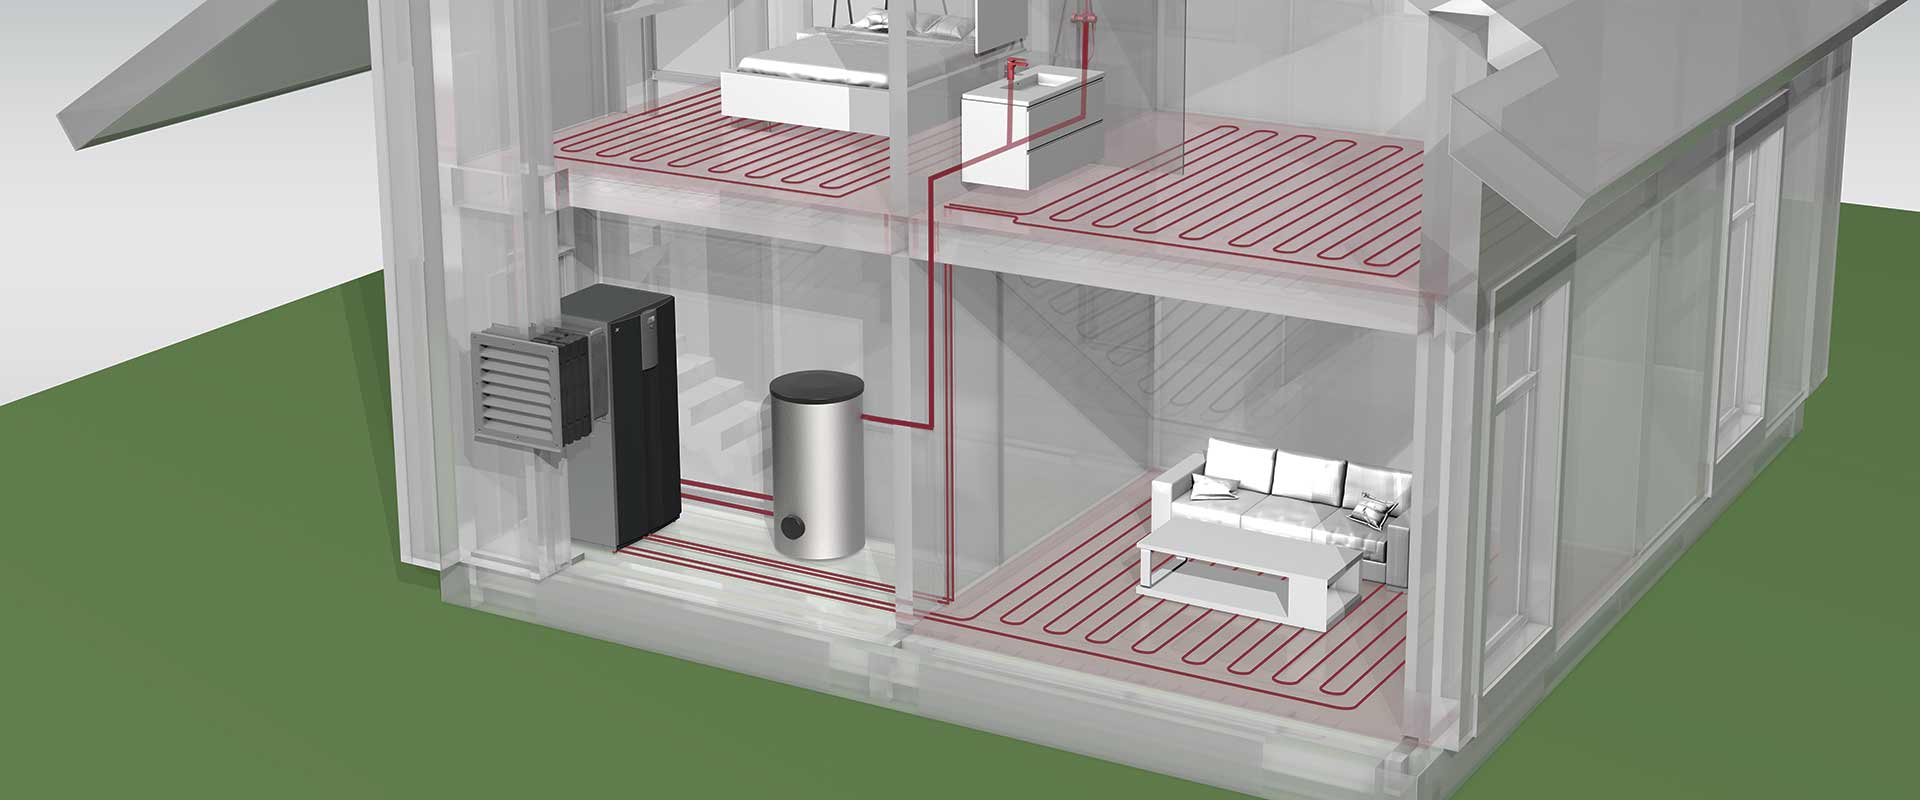 Grafische Darstellung Auslegung Luft/Wasser-Wärmepumpe zur Innenaufstellung